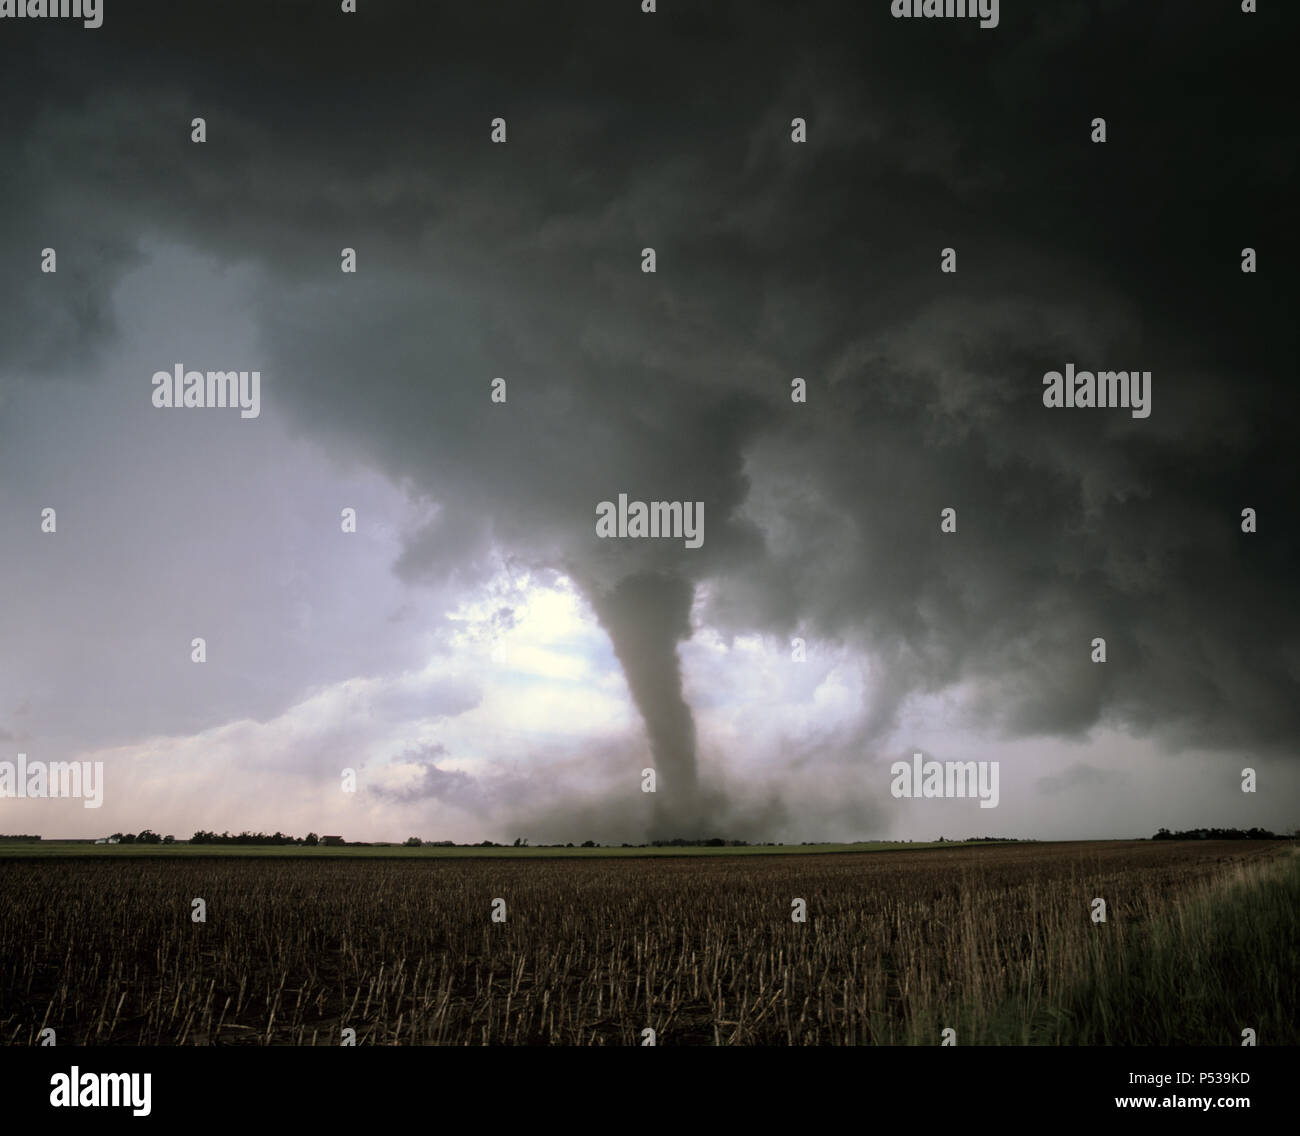 Ein Tornado berührt von einer superzelle Gewitter in Ackerland in Nebraska, USA Stockfoto